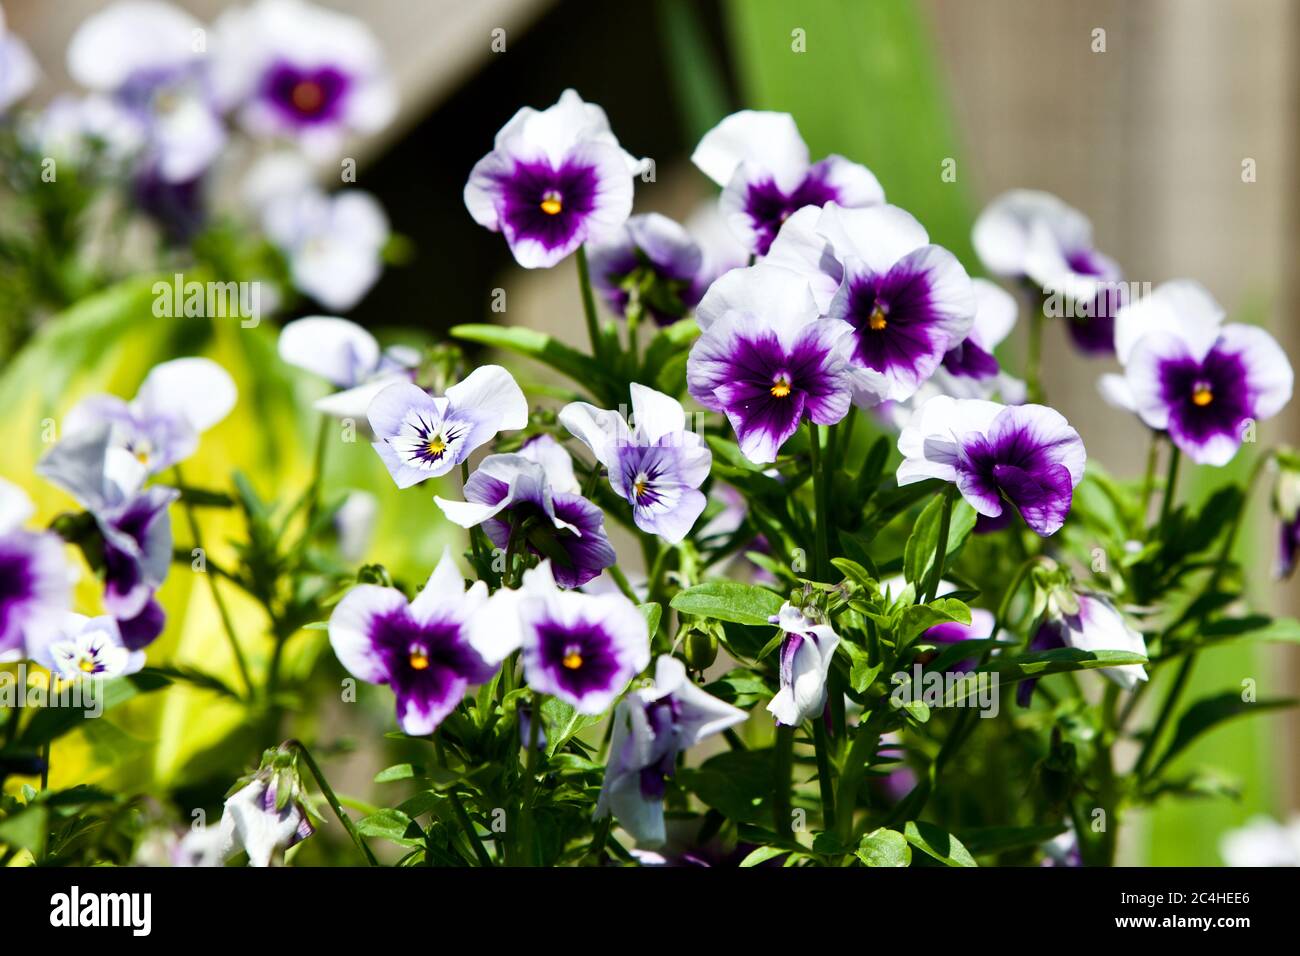 Beautiful display of purple Violas Stock Photo